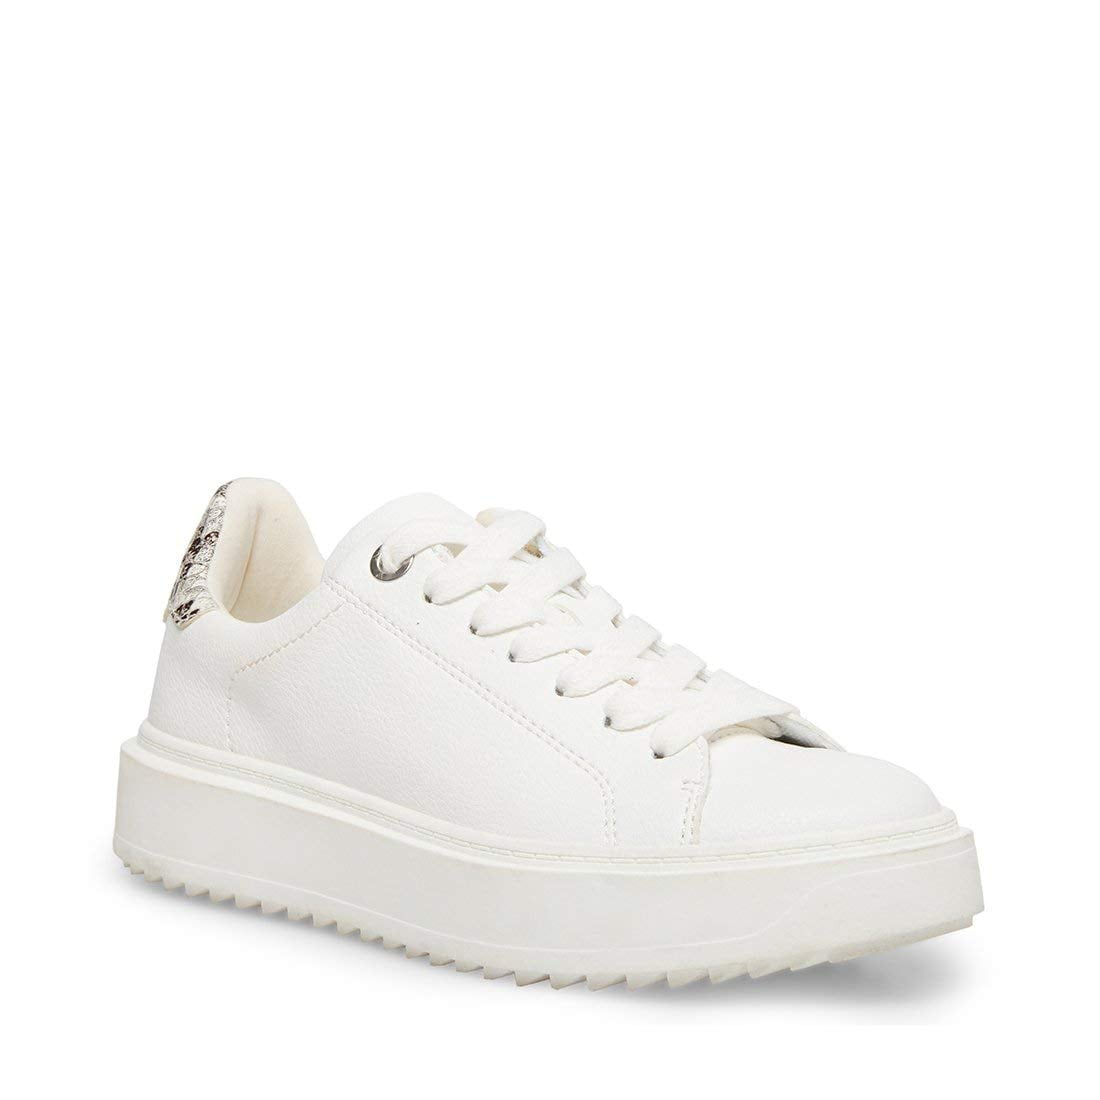 Steve Madden Catcher Sneaker (Women's) - Walmart.com